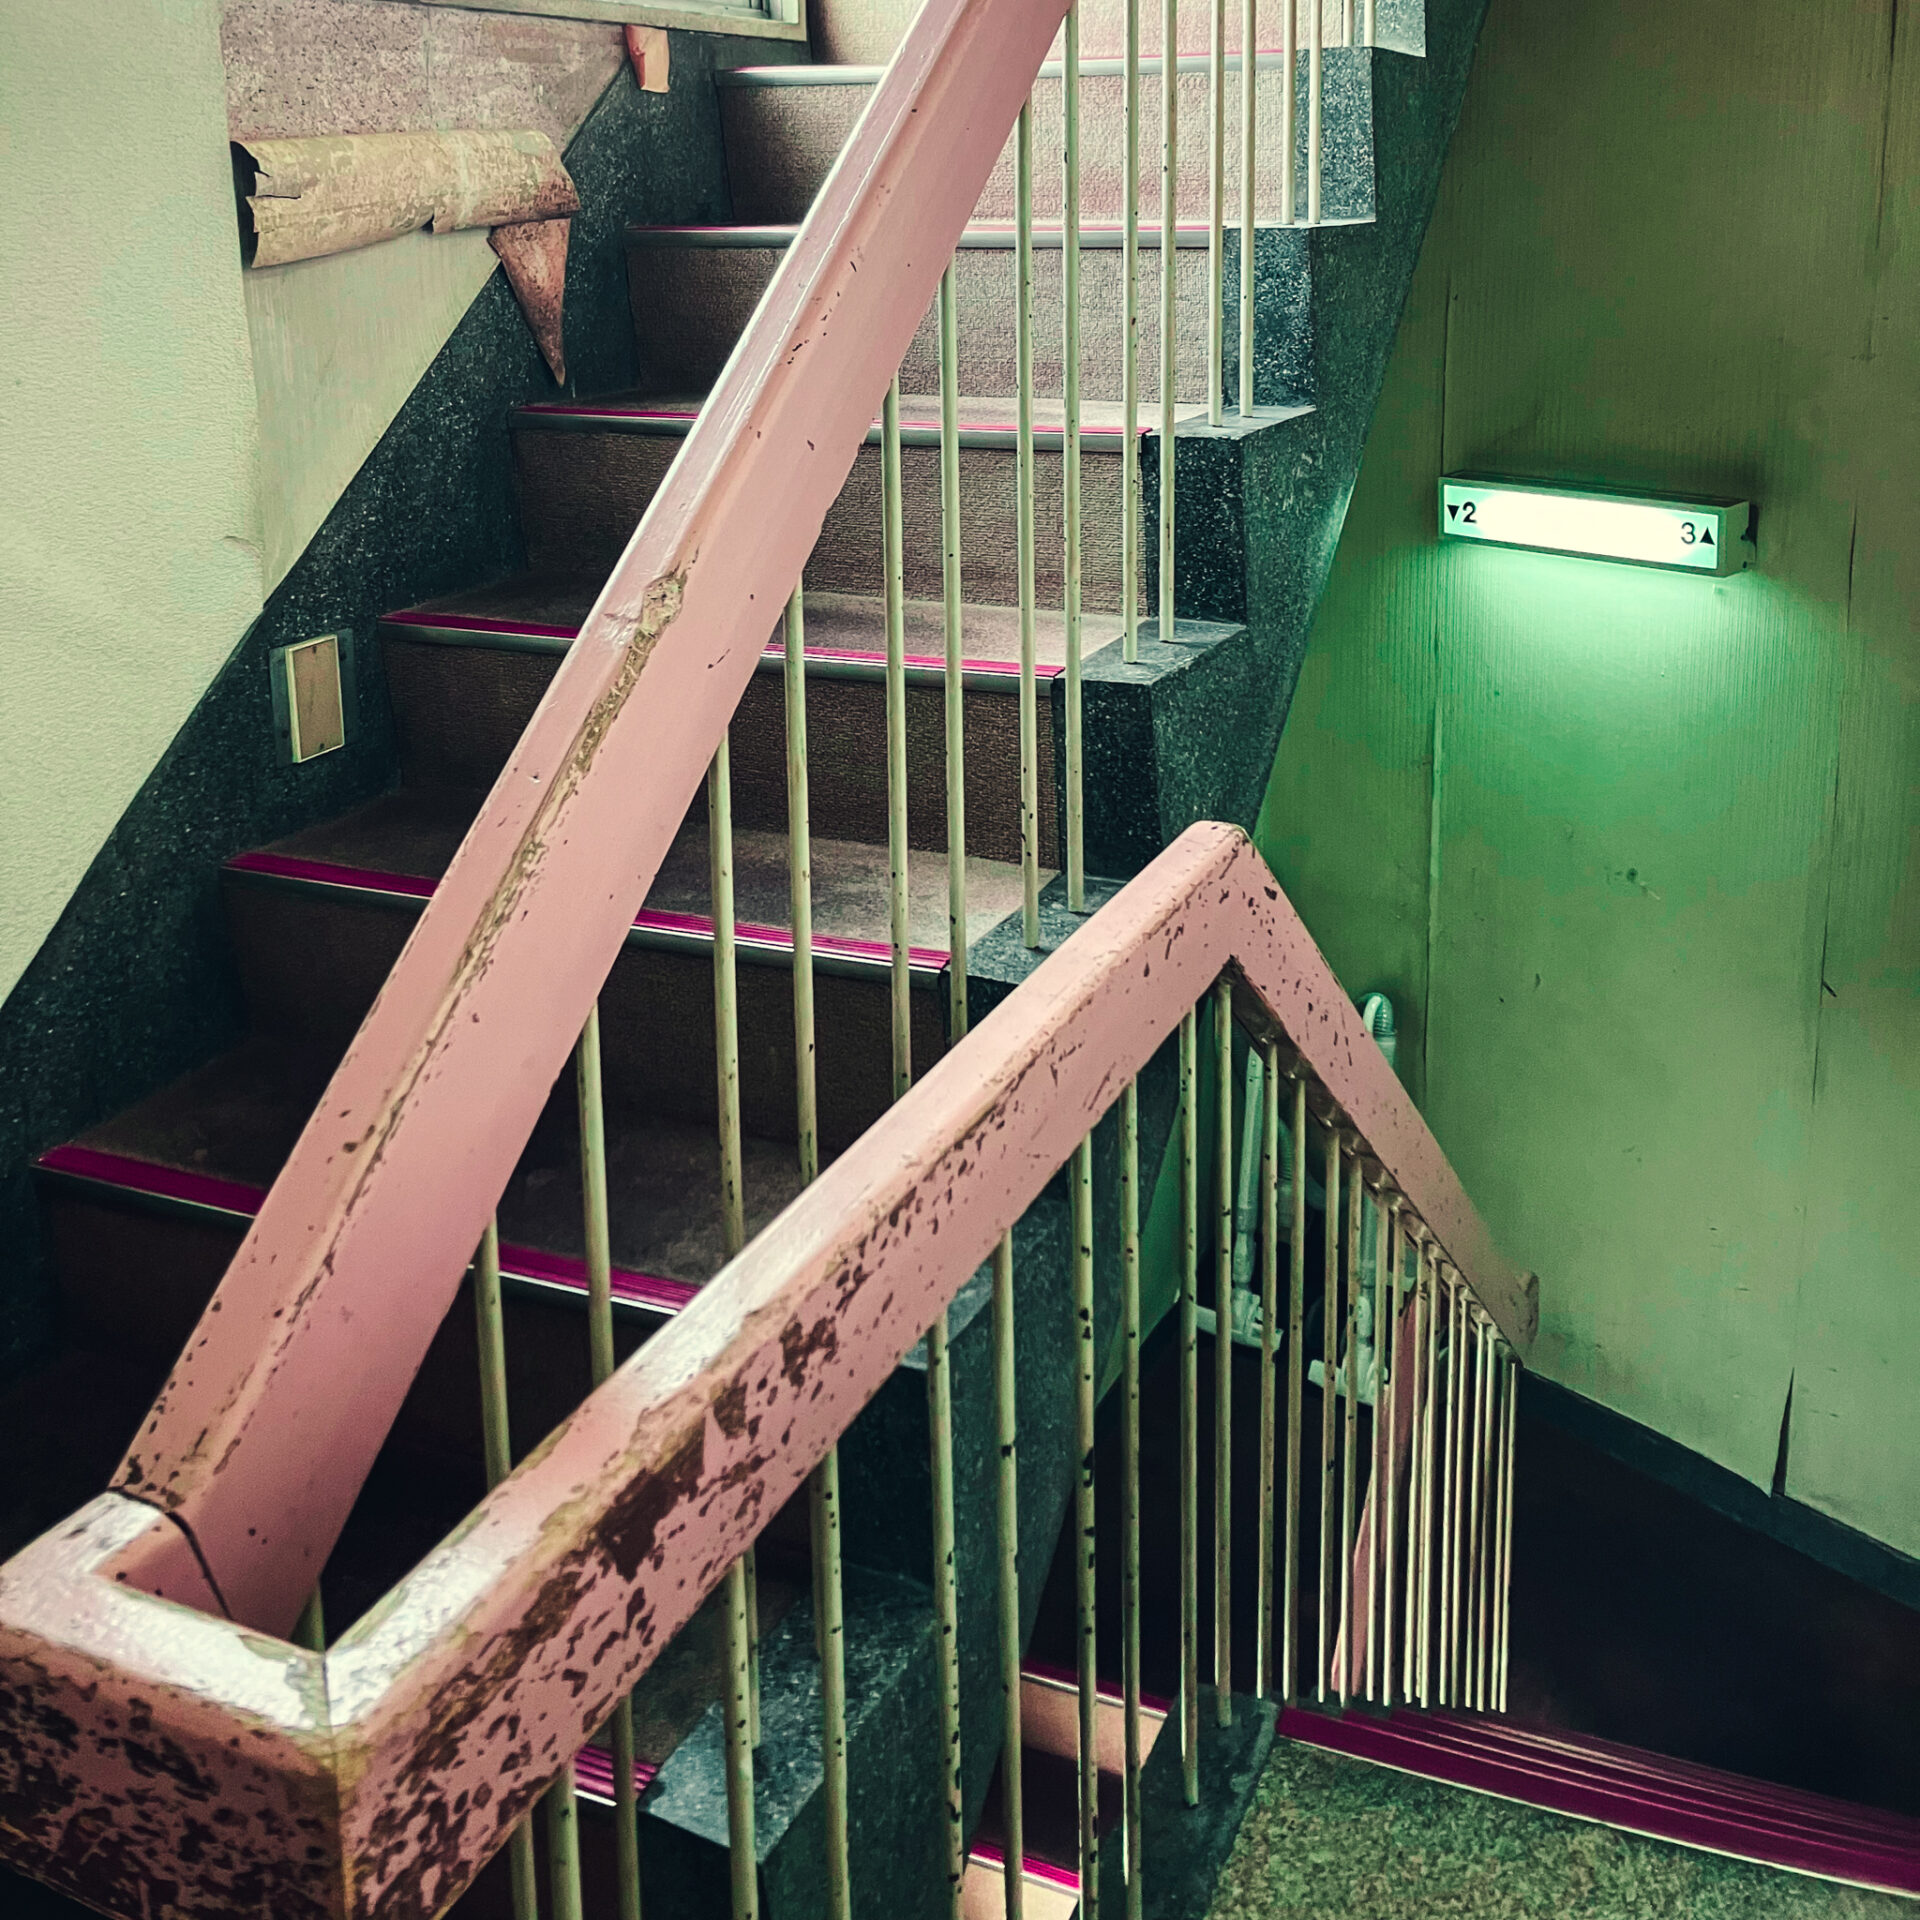 レトロラブホ
セーヌ21
階段